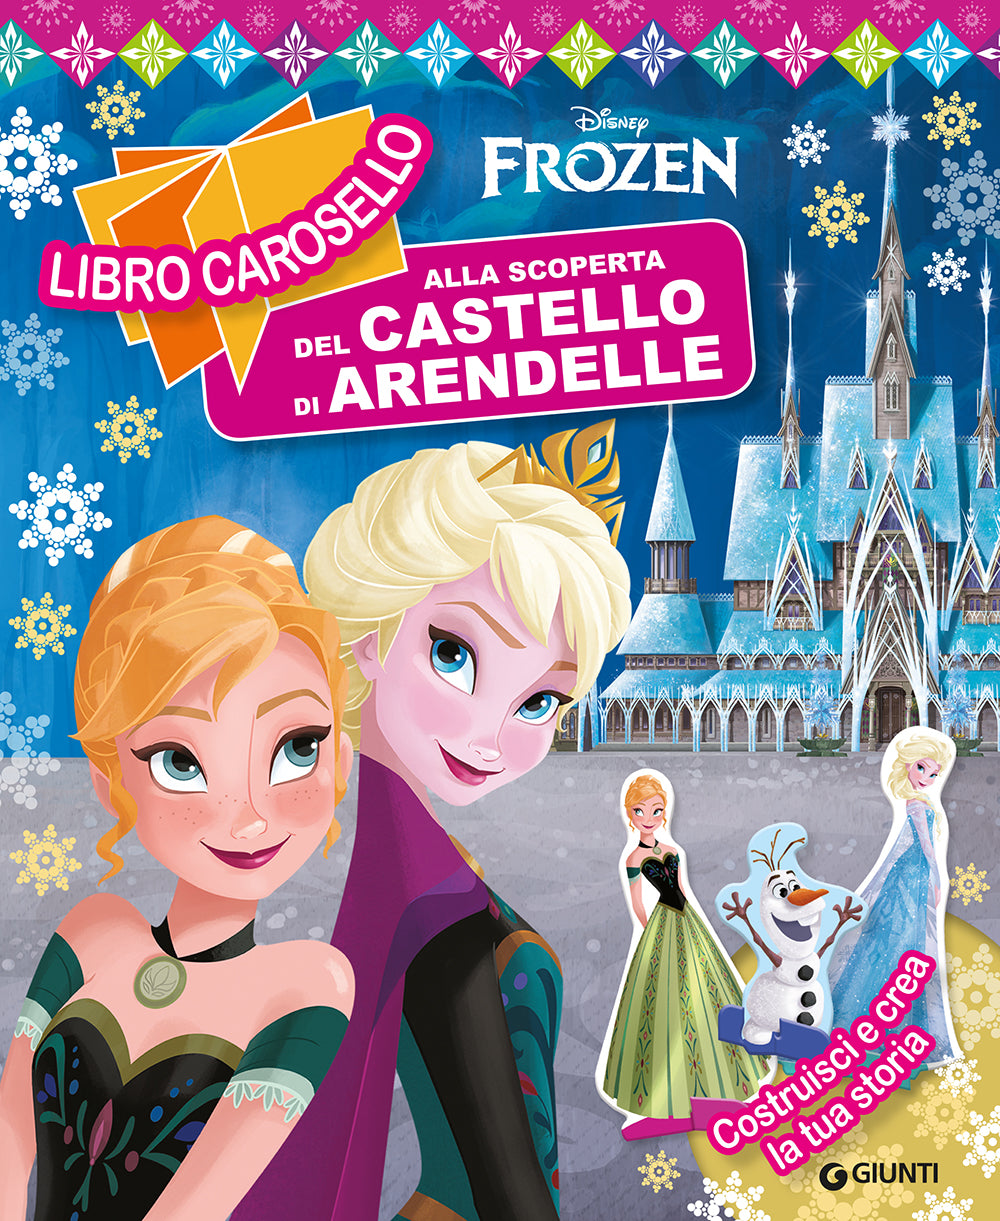 Libro carosello Disney Frozen - Alla scoperta del castello di Arendelle.  Costruisci e crea la tua storia: libro di Walt Disney